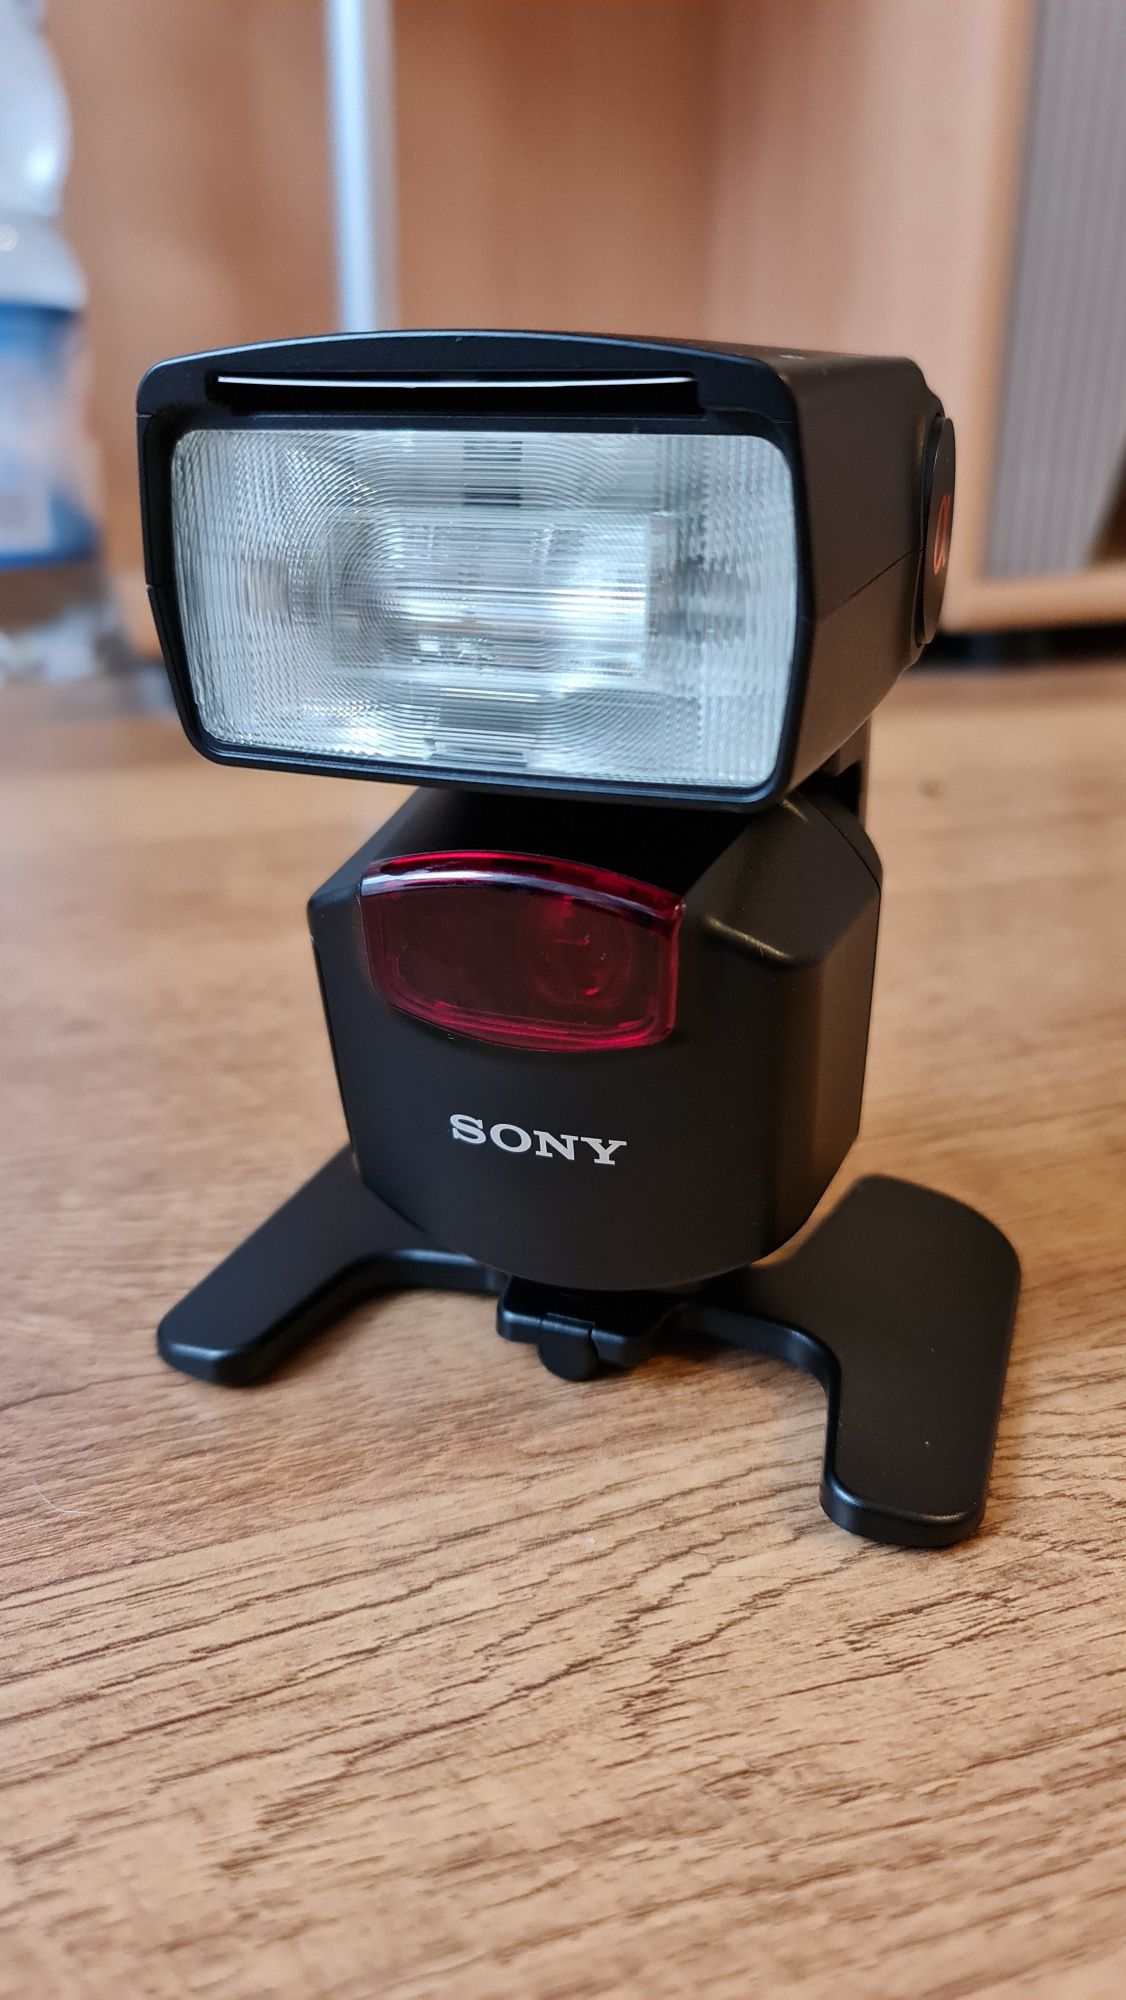 Sony lampa HVL-F43AM z systemem Quick Shift Bounce